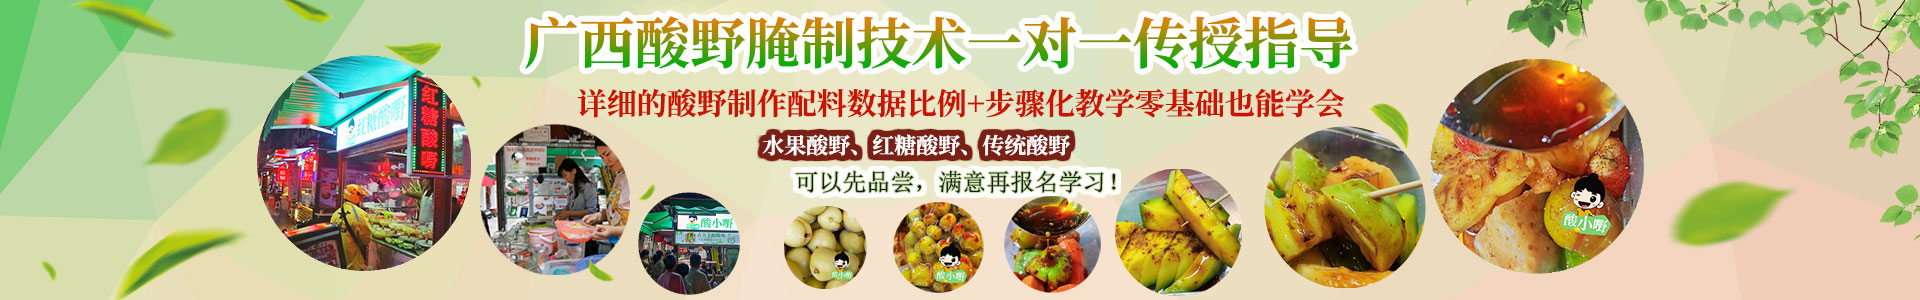 天津酸嘢-酸品-酸料-酸野水果做法与配料学费多少钱